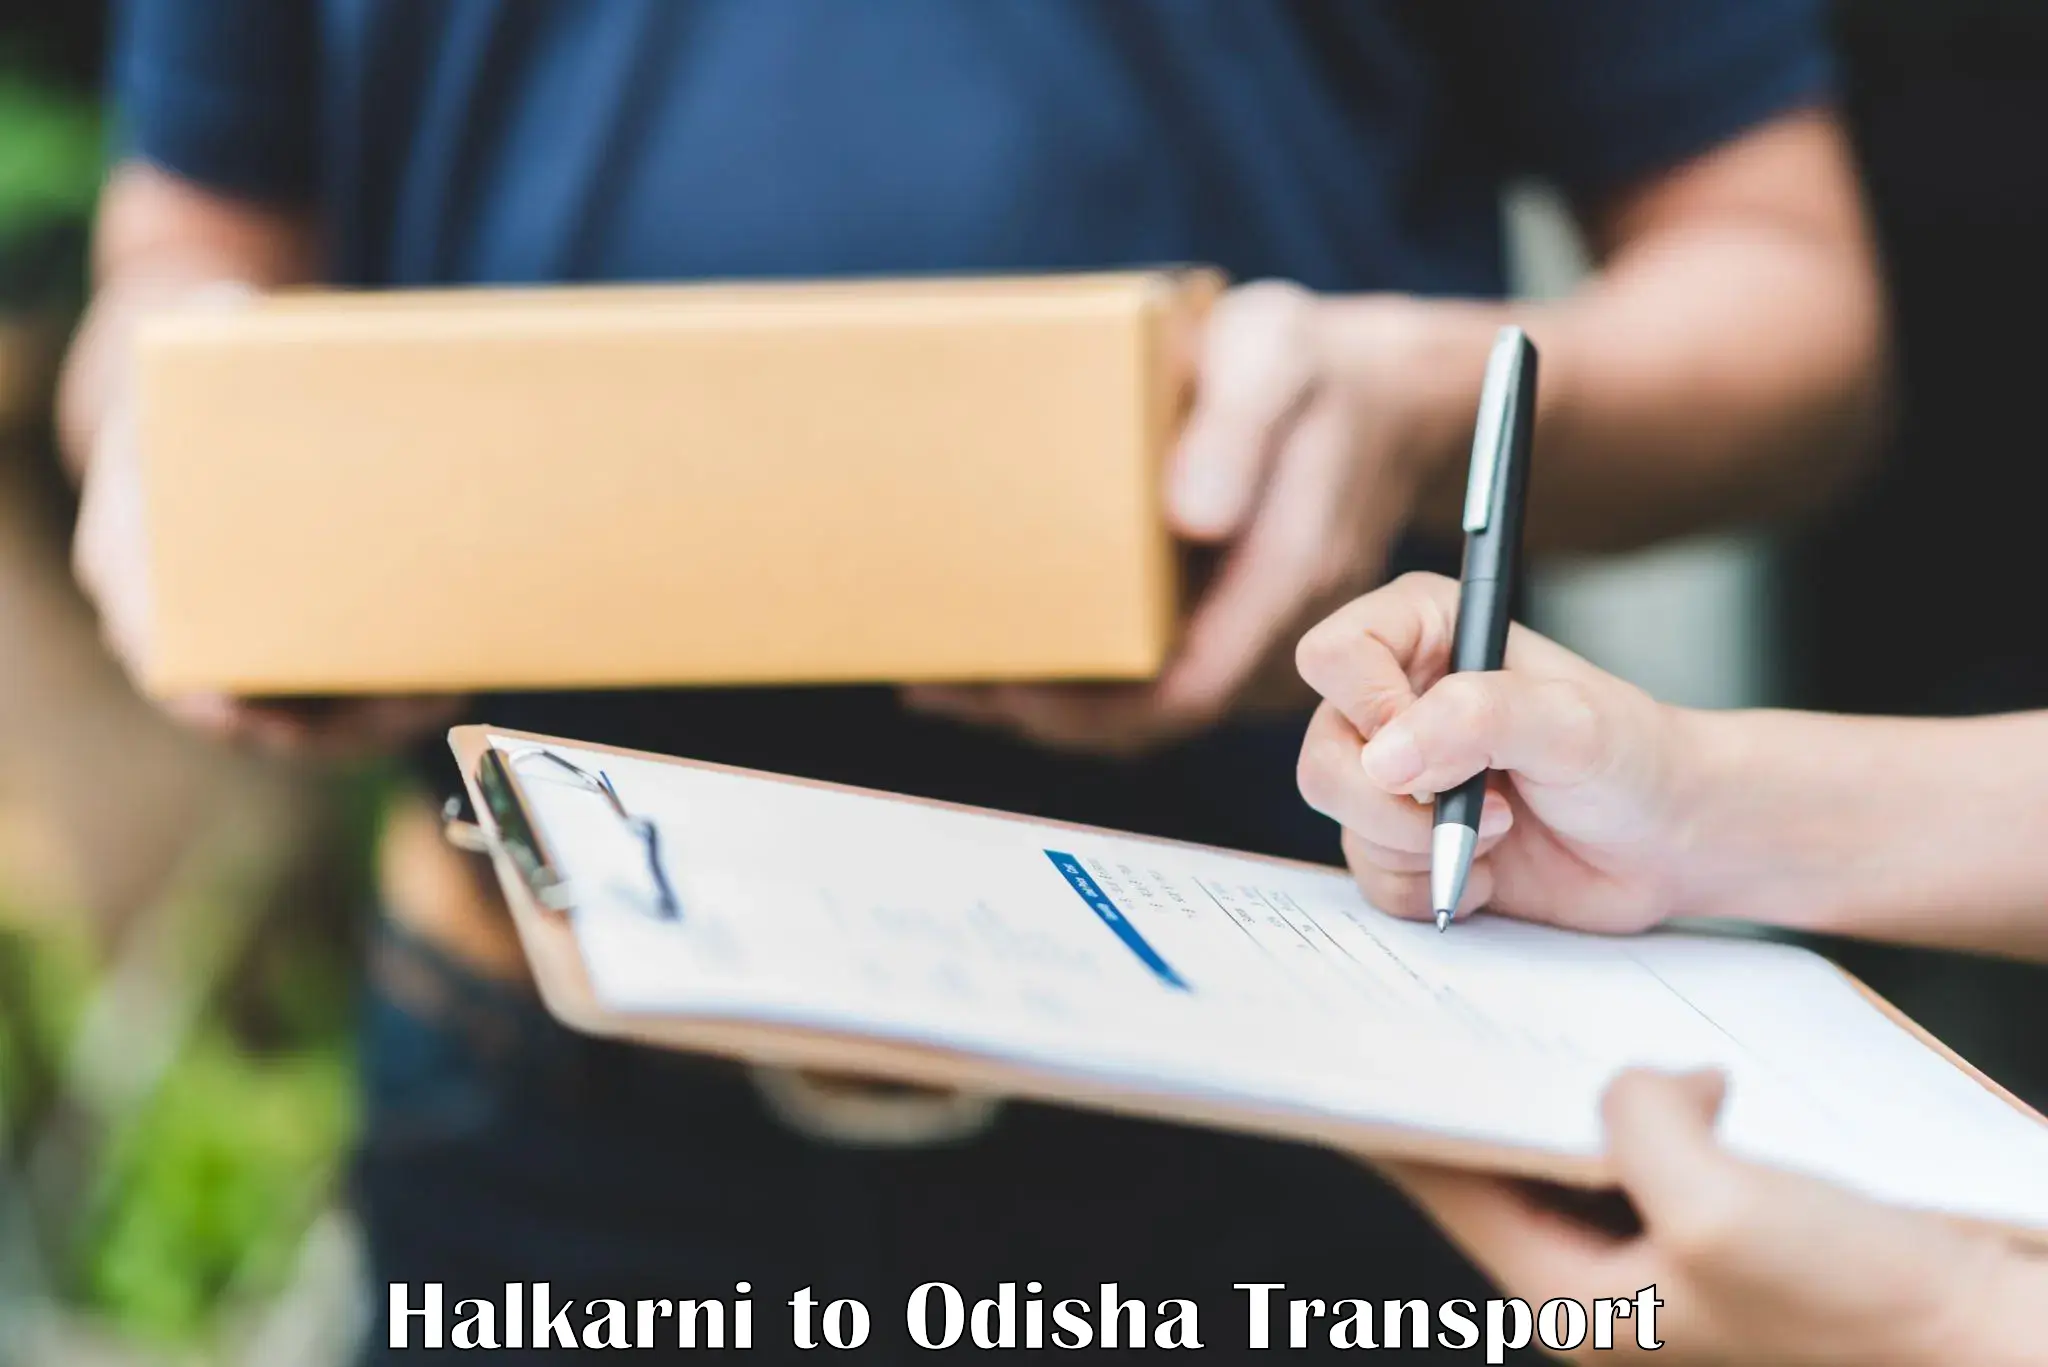 Shipping partner Halkarni to Paikana